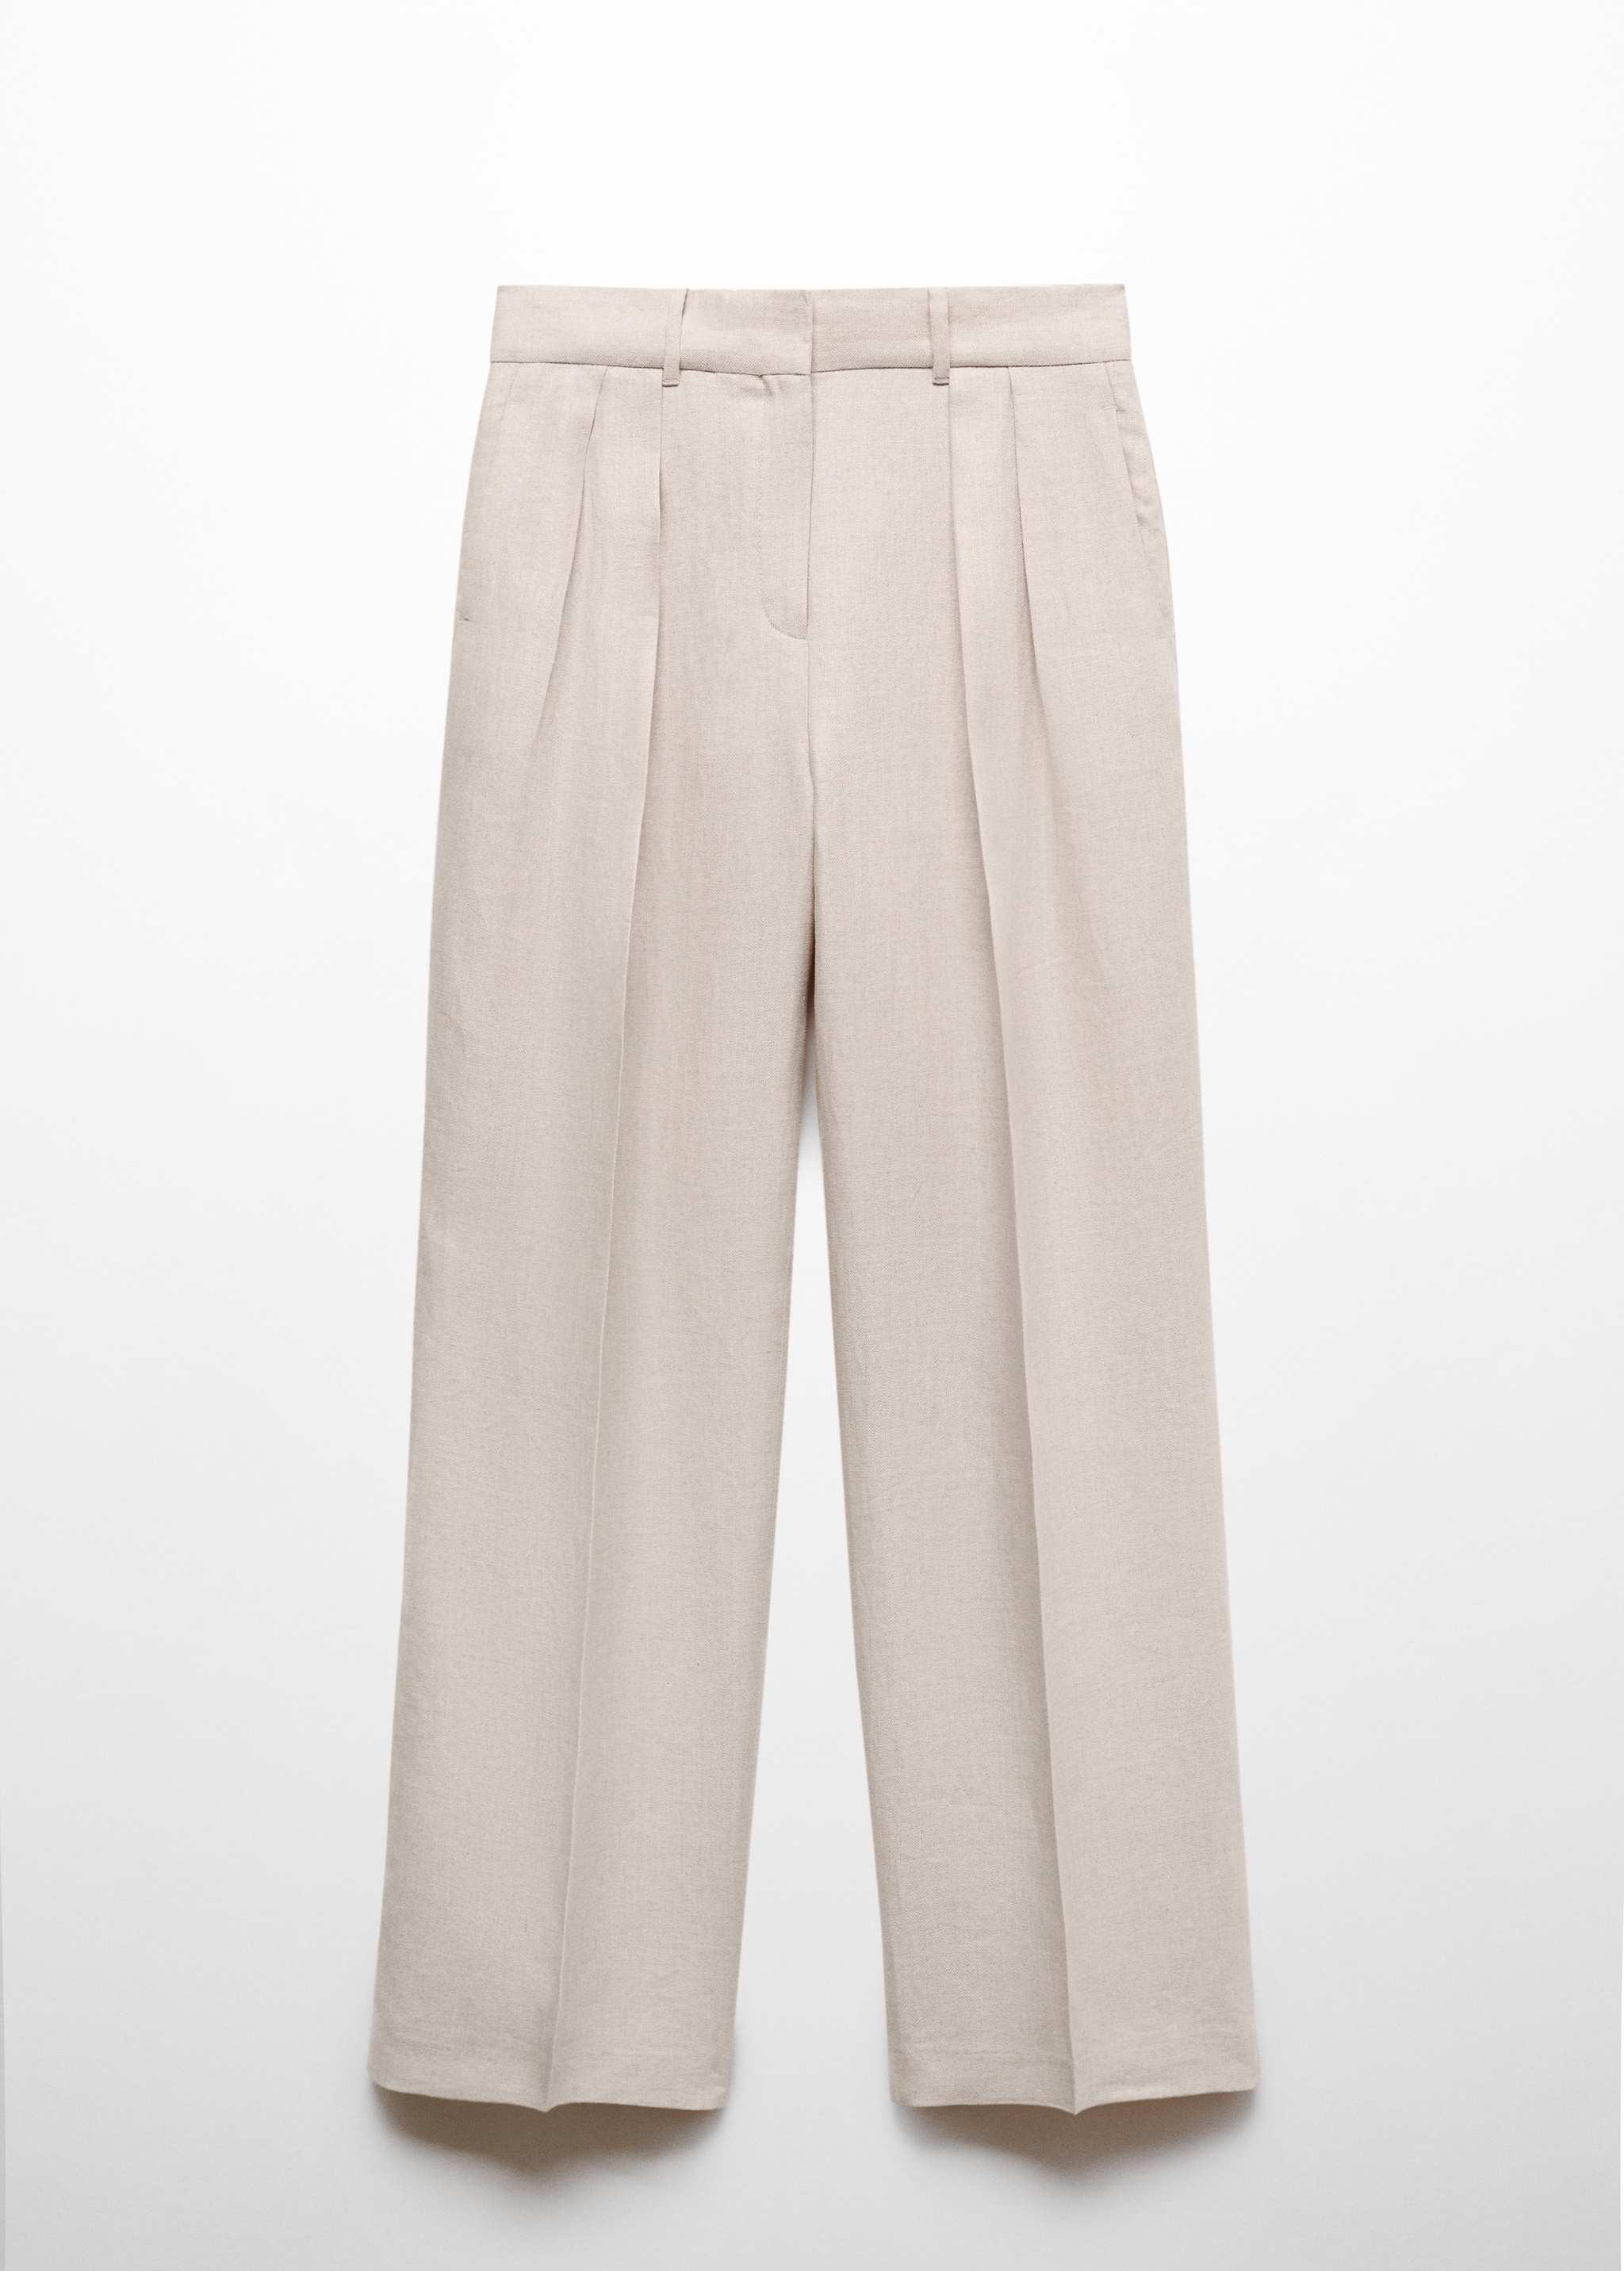 Pantaloni pinces 100% lino - Articolo senza modello